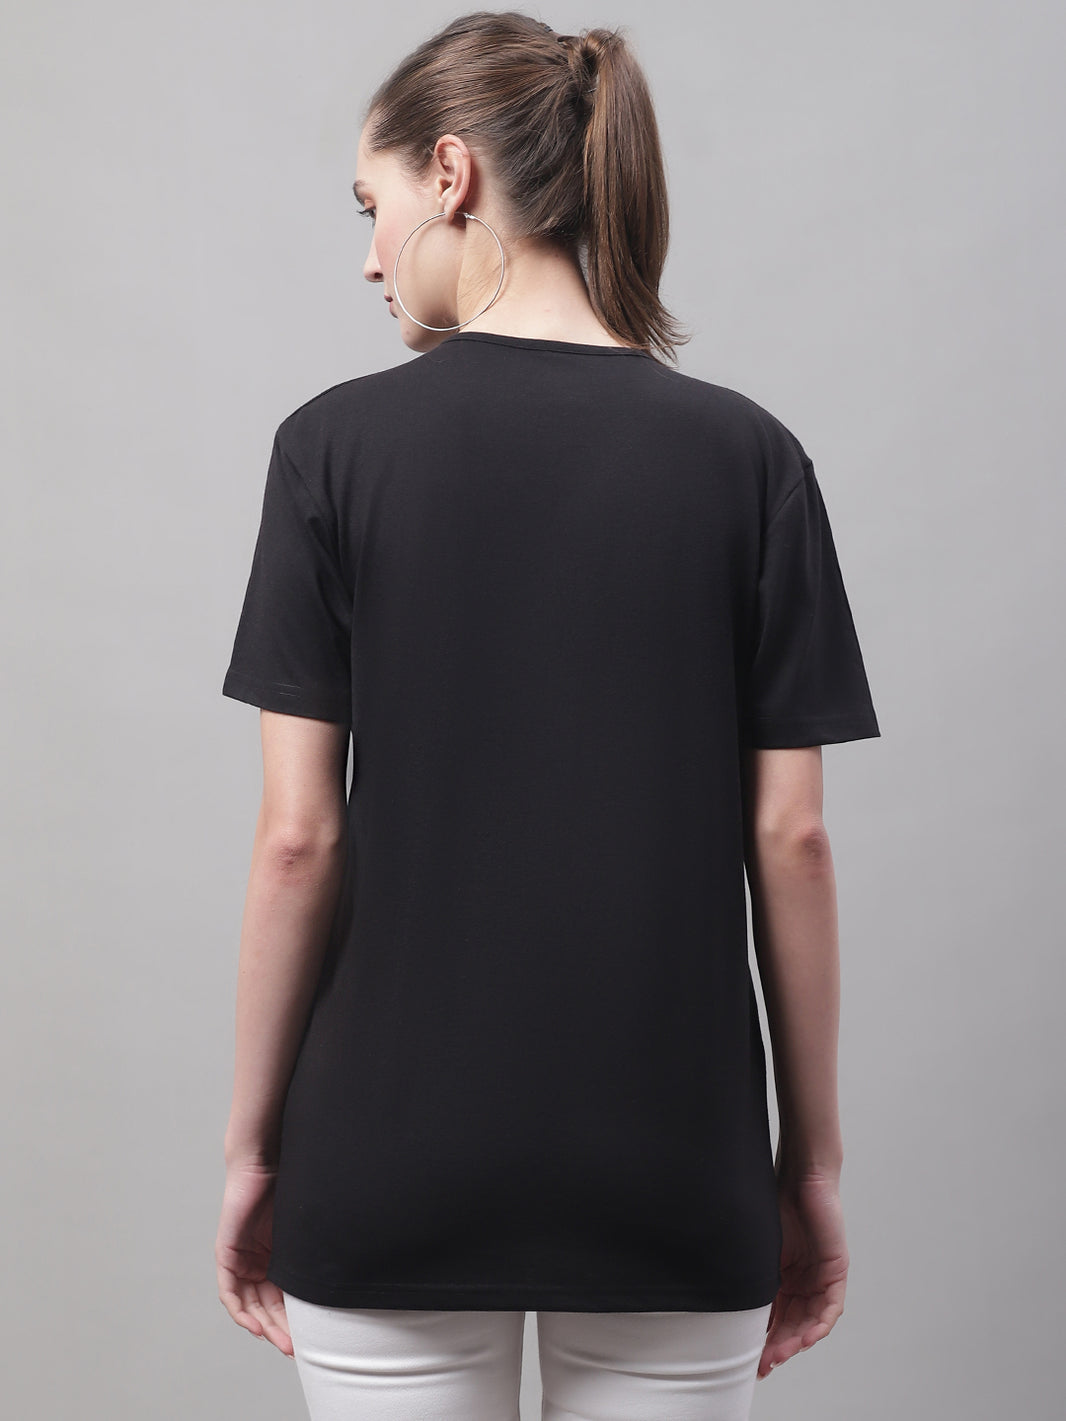 Vimal Jonney V Neck Cotton Solid Black T-Shirt for Women